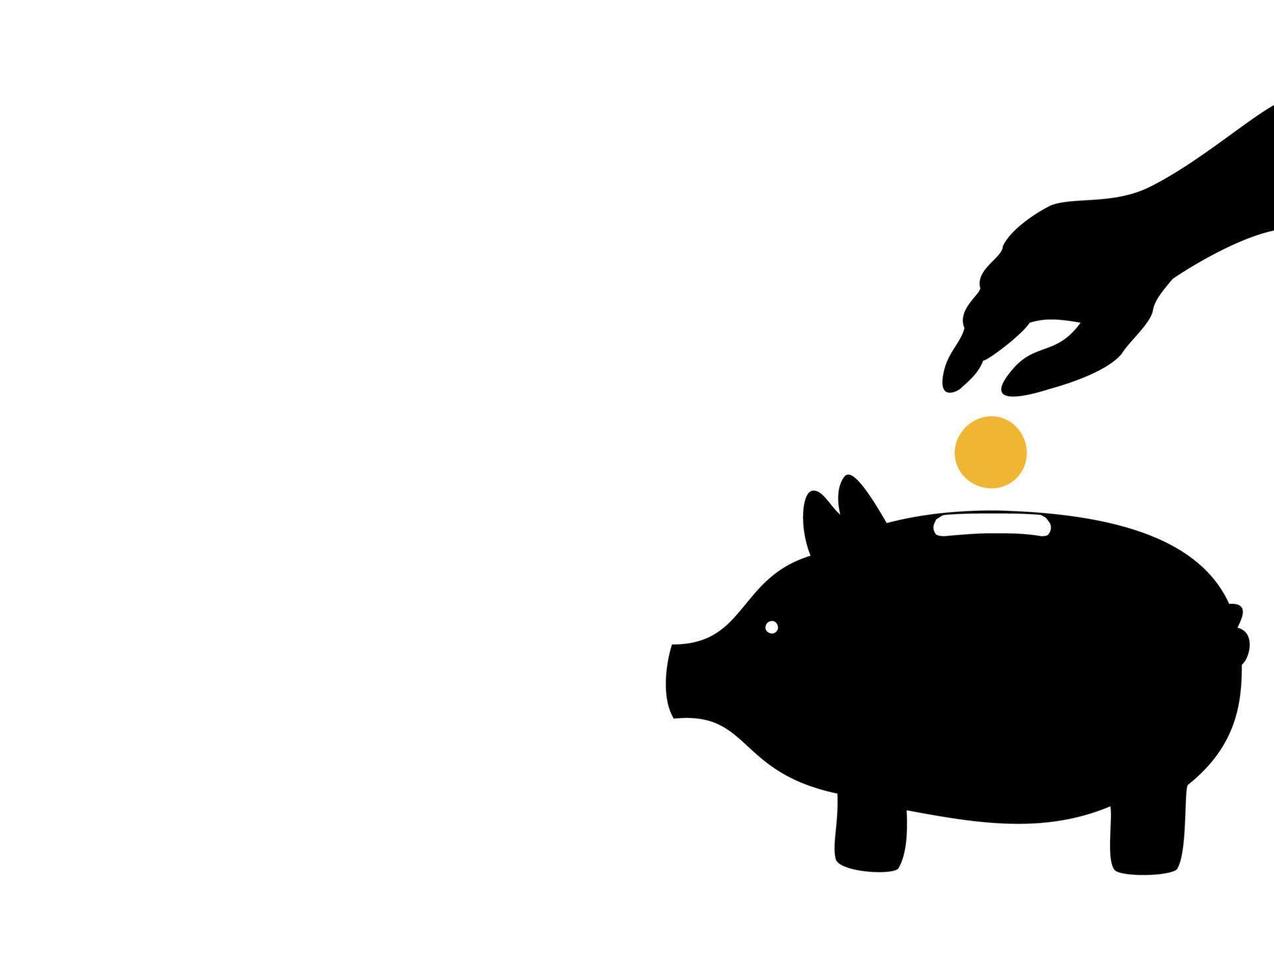 gris på en grå bakgrund och grön ekollon. en vektor illustration